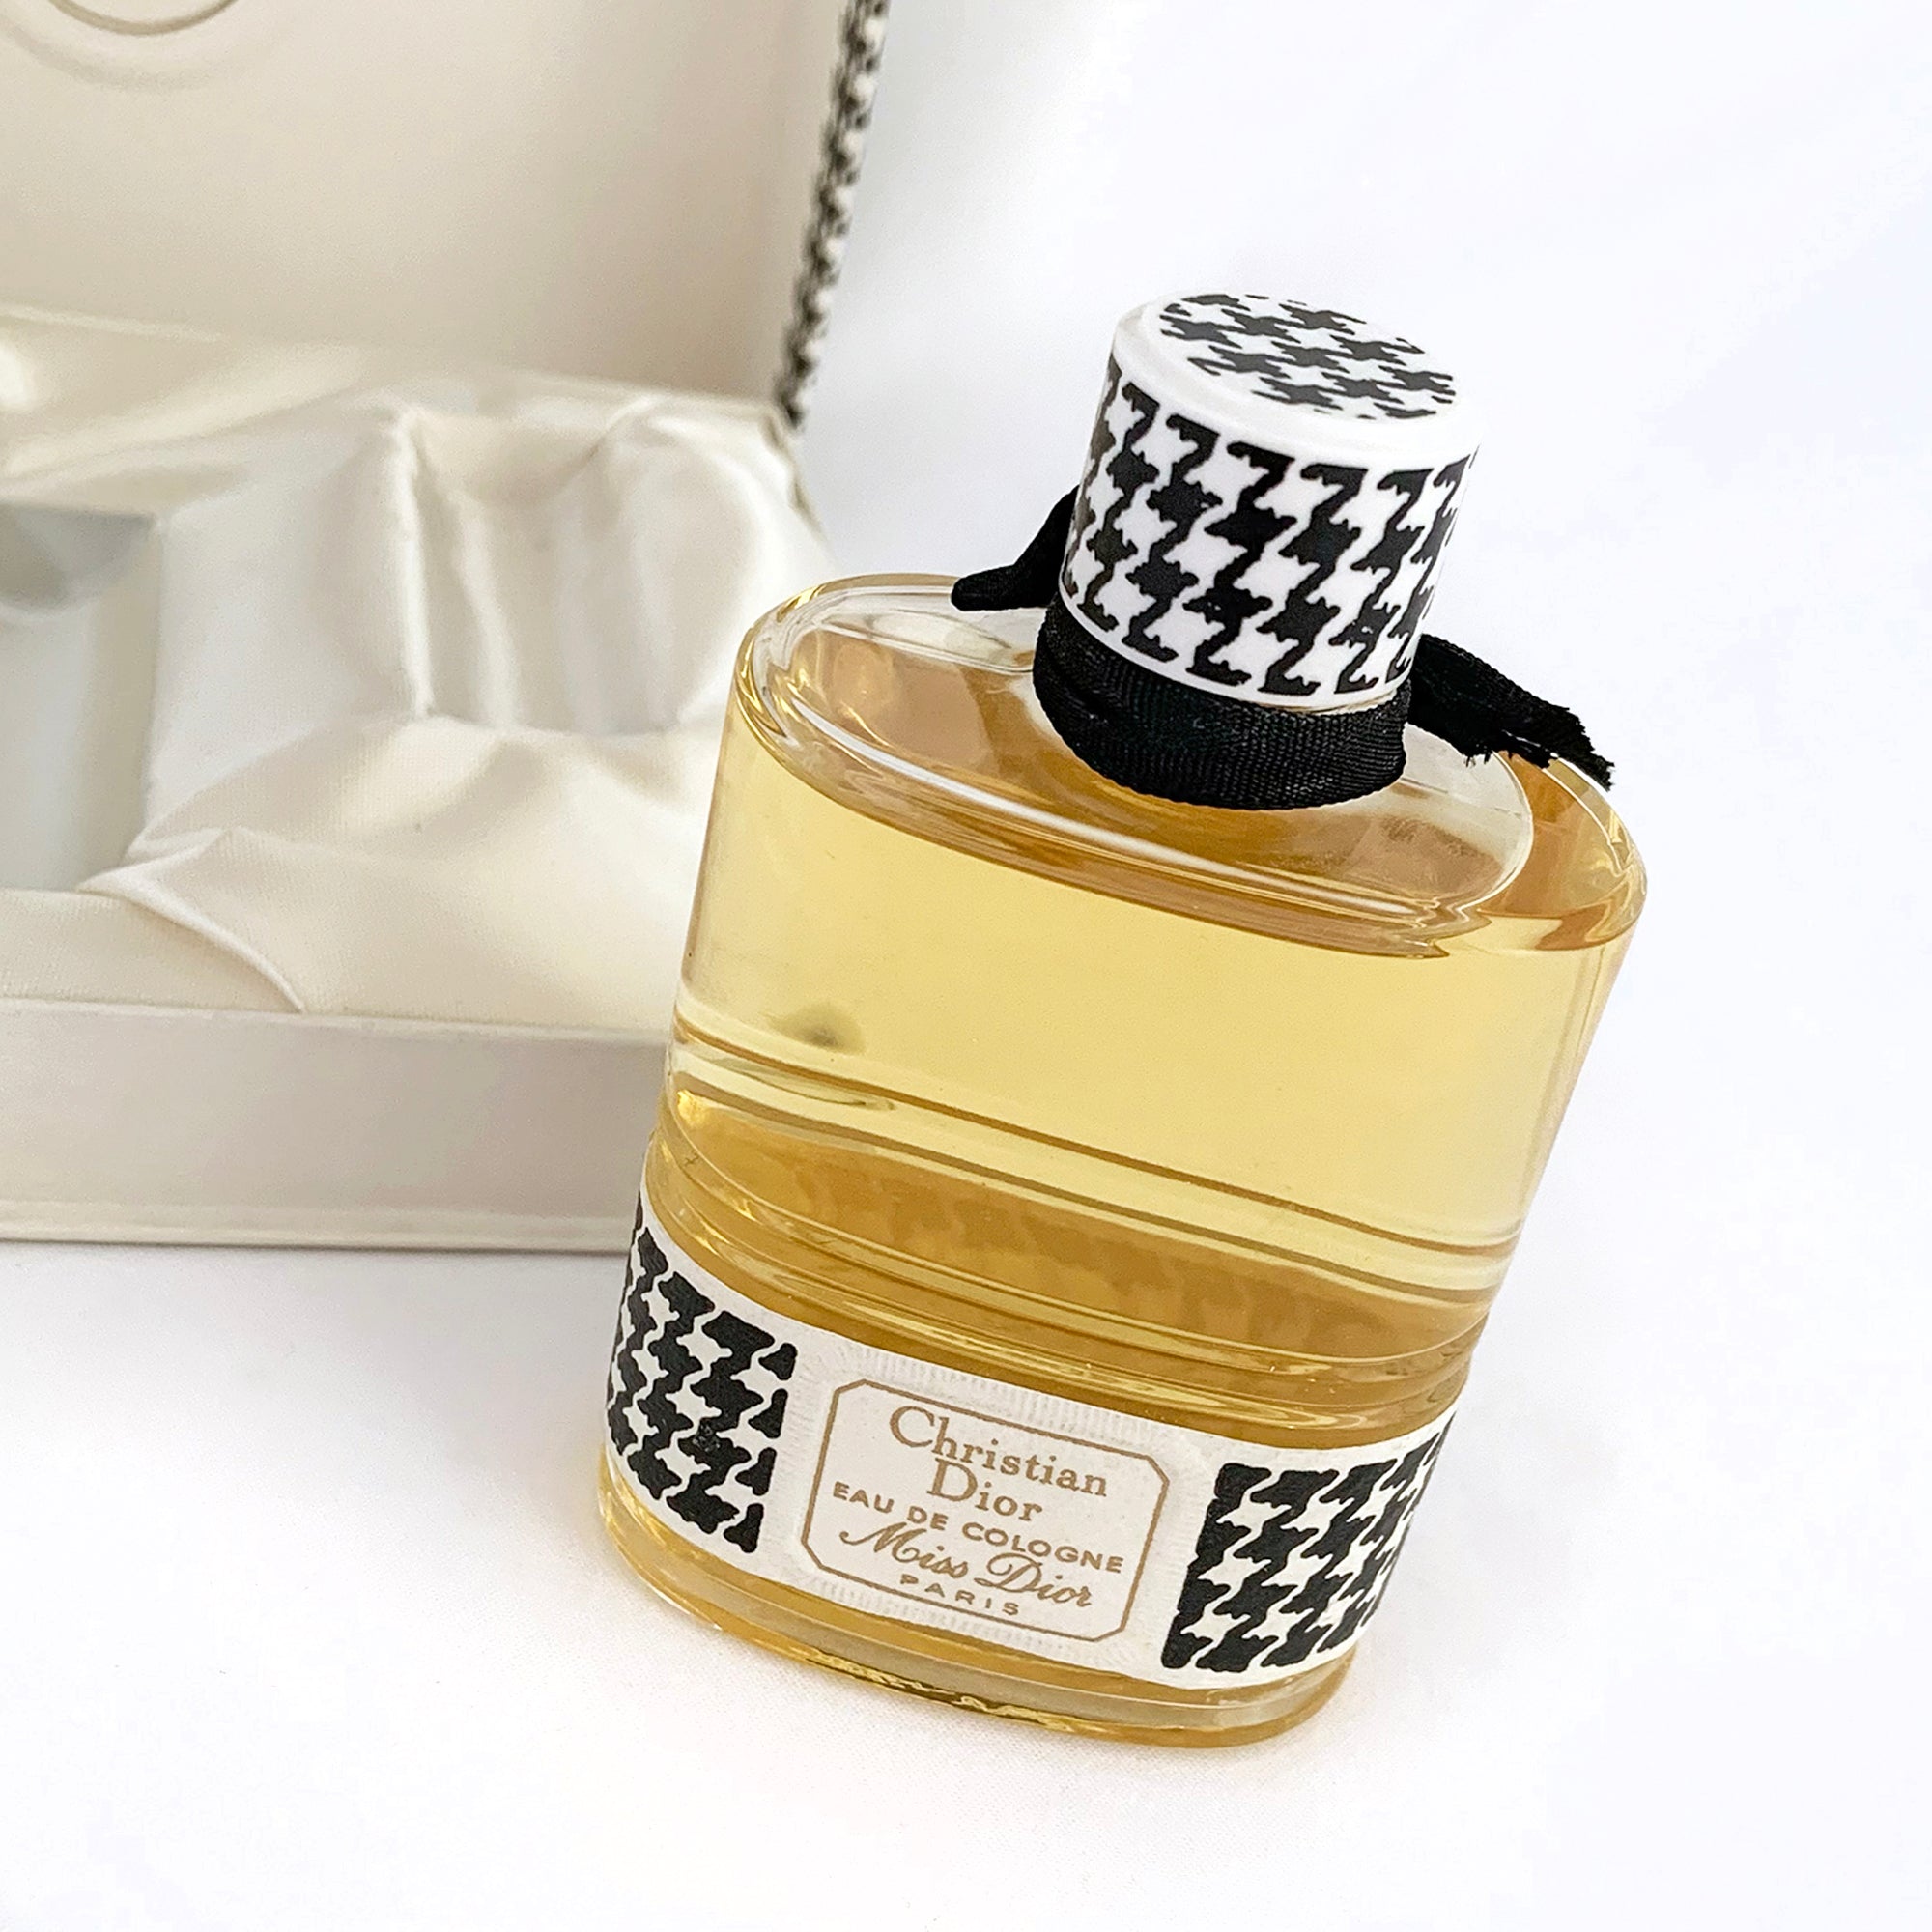 Christian Dior Miss Dior Perfume - Vintage 54ml Partial Contents Eau de  Toilette EDT Splash Bottle